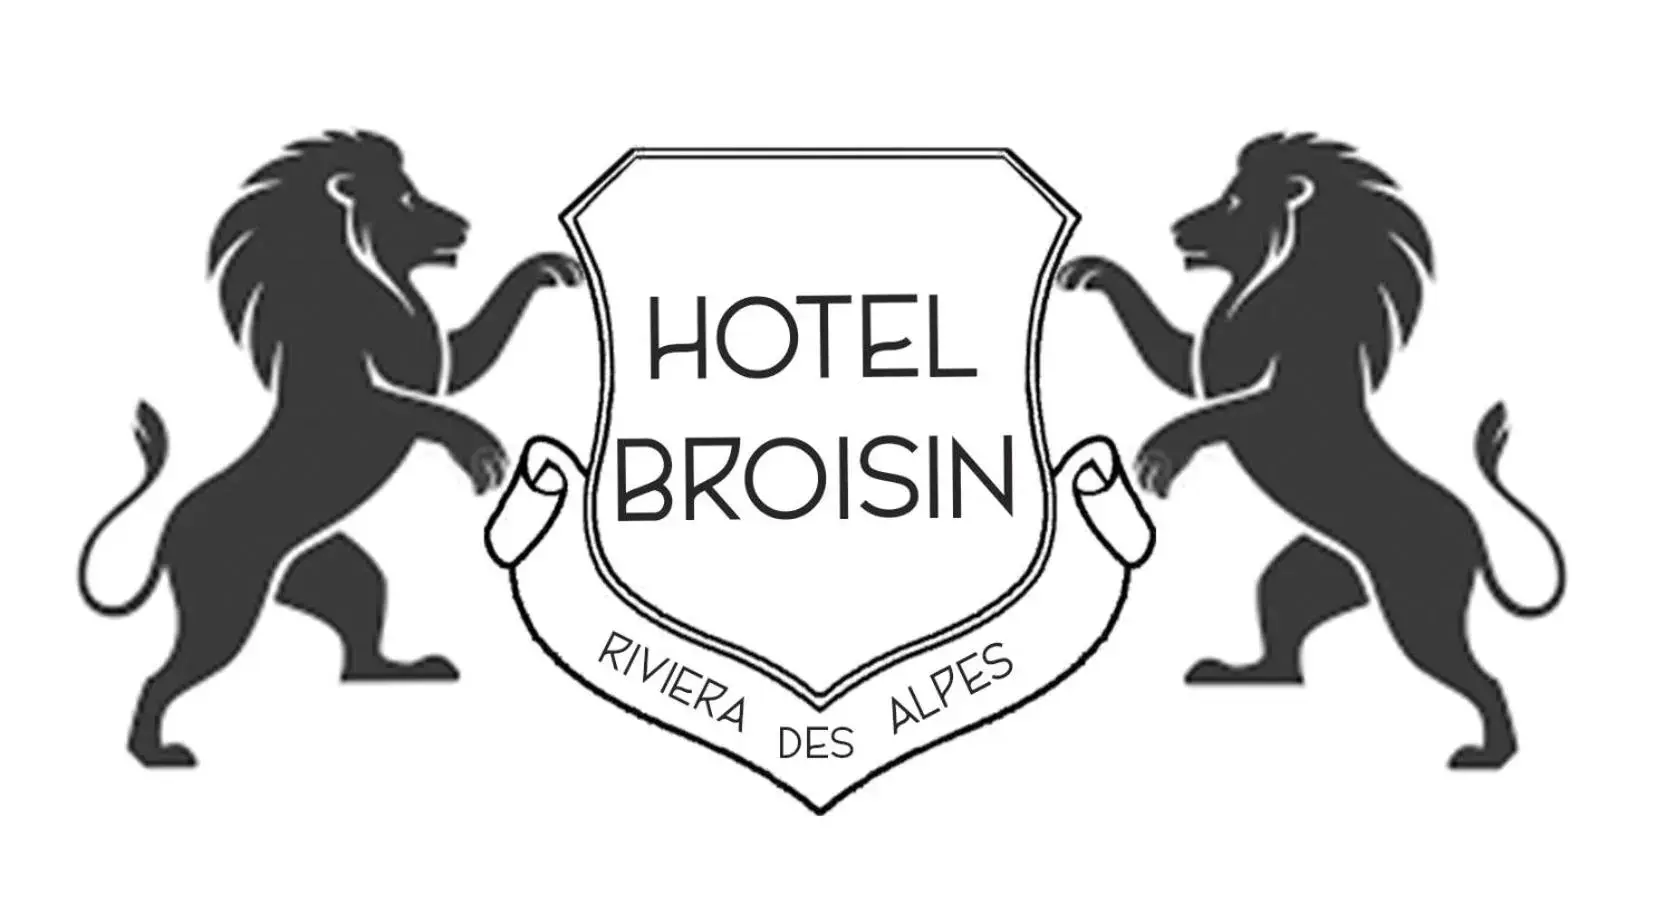 Property logo or sign in Hôtel Broisin